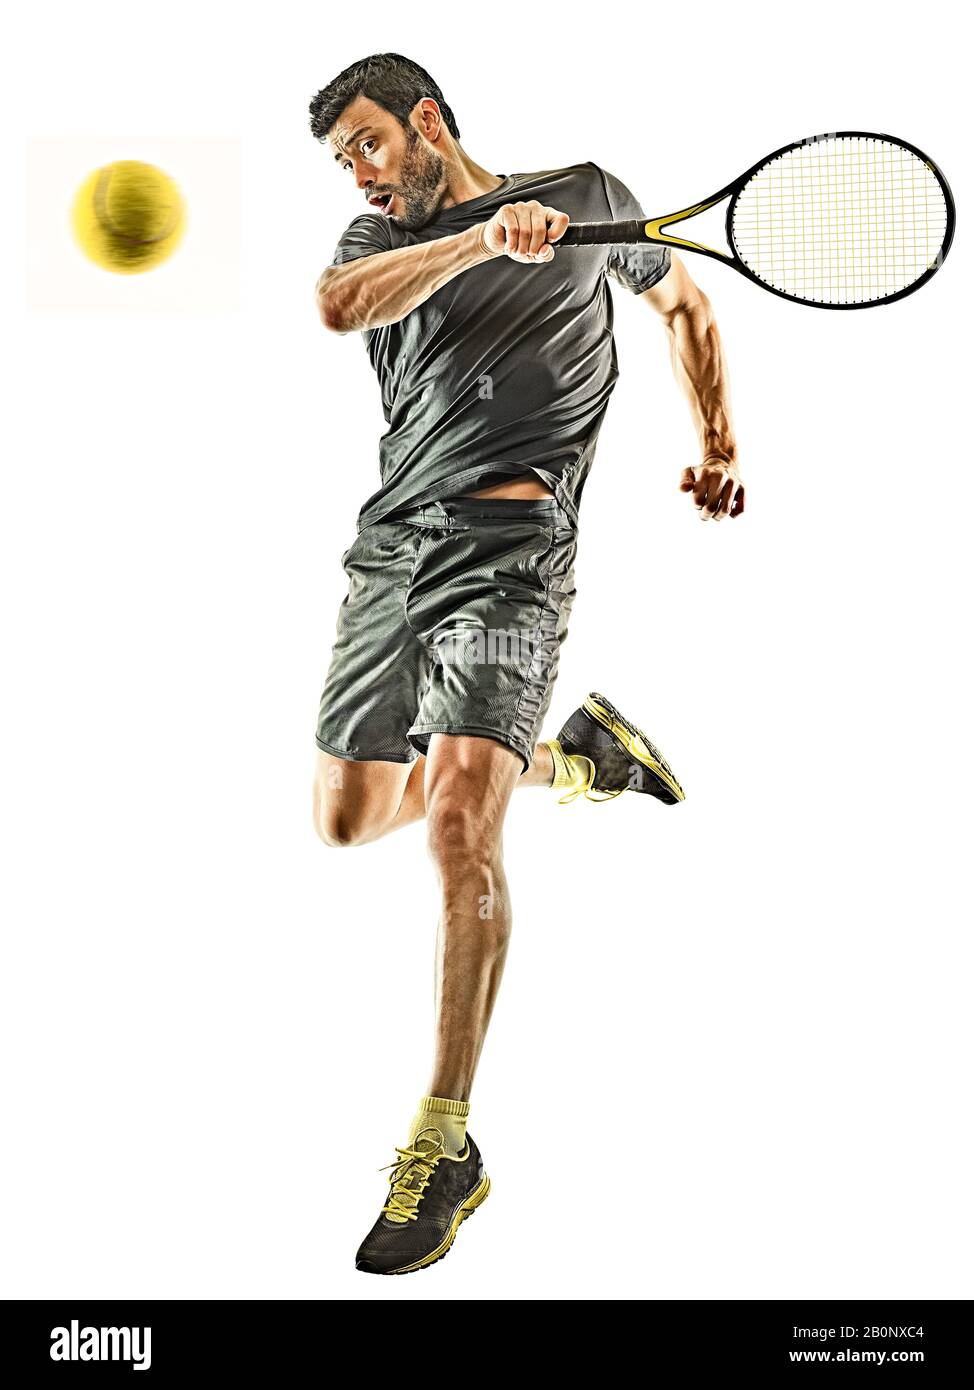 un joueur de tennis caucasien mature en studio isolé sur fond blanc Banque D'Images